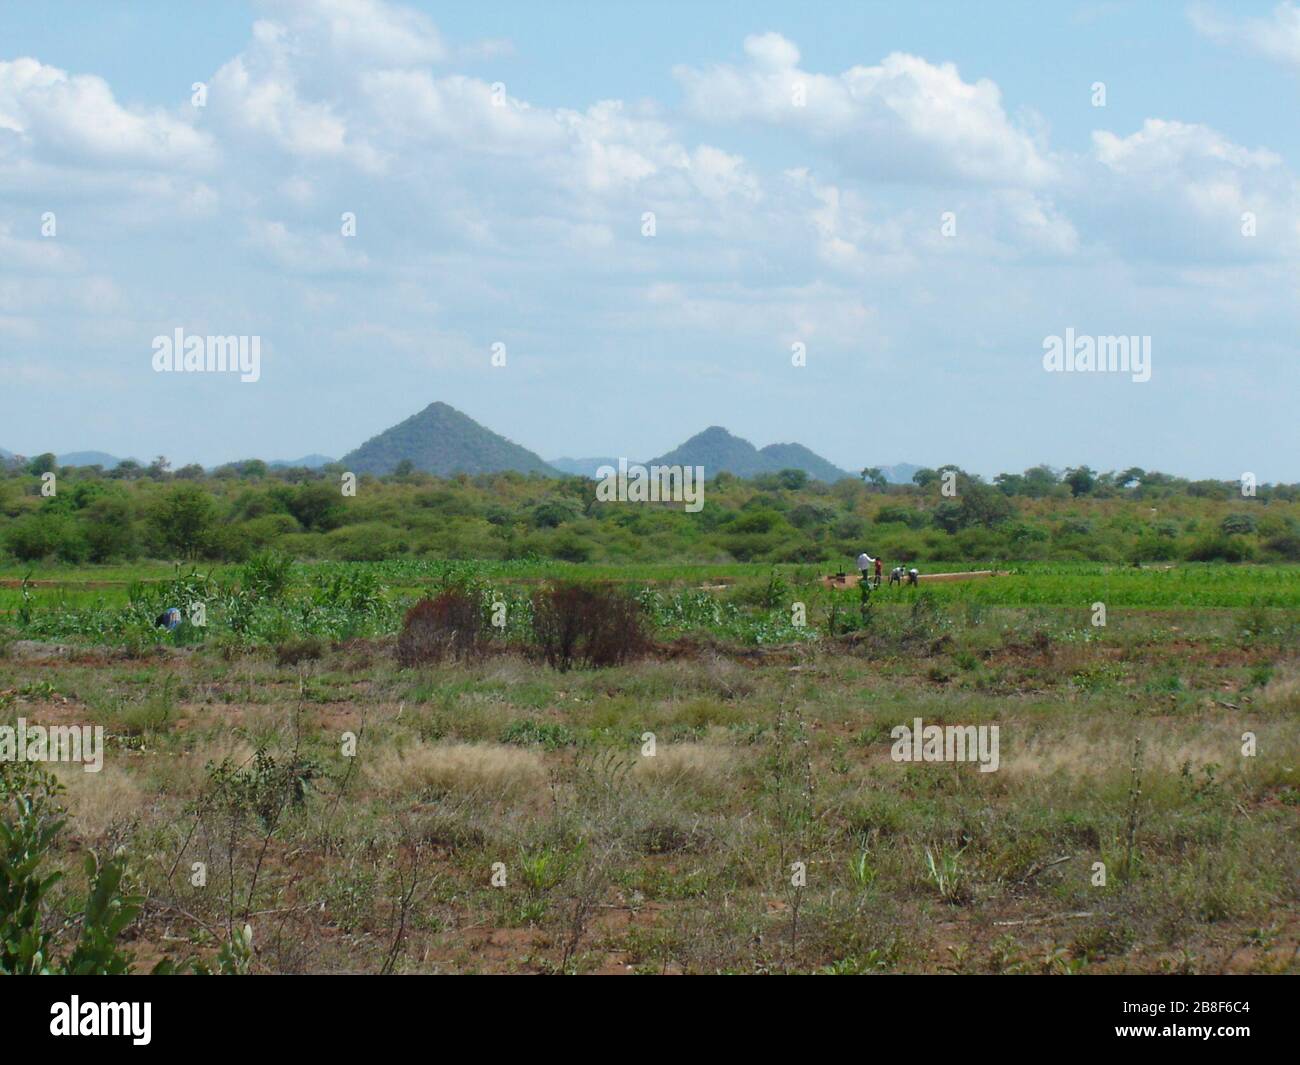 Zimbabwe Farming Resolution Stock Photography Images